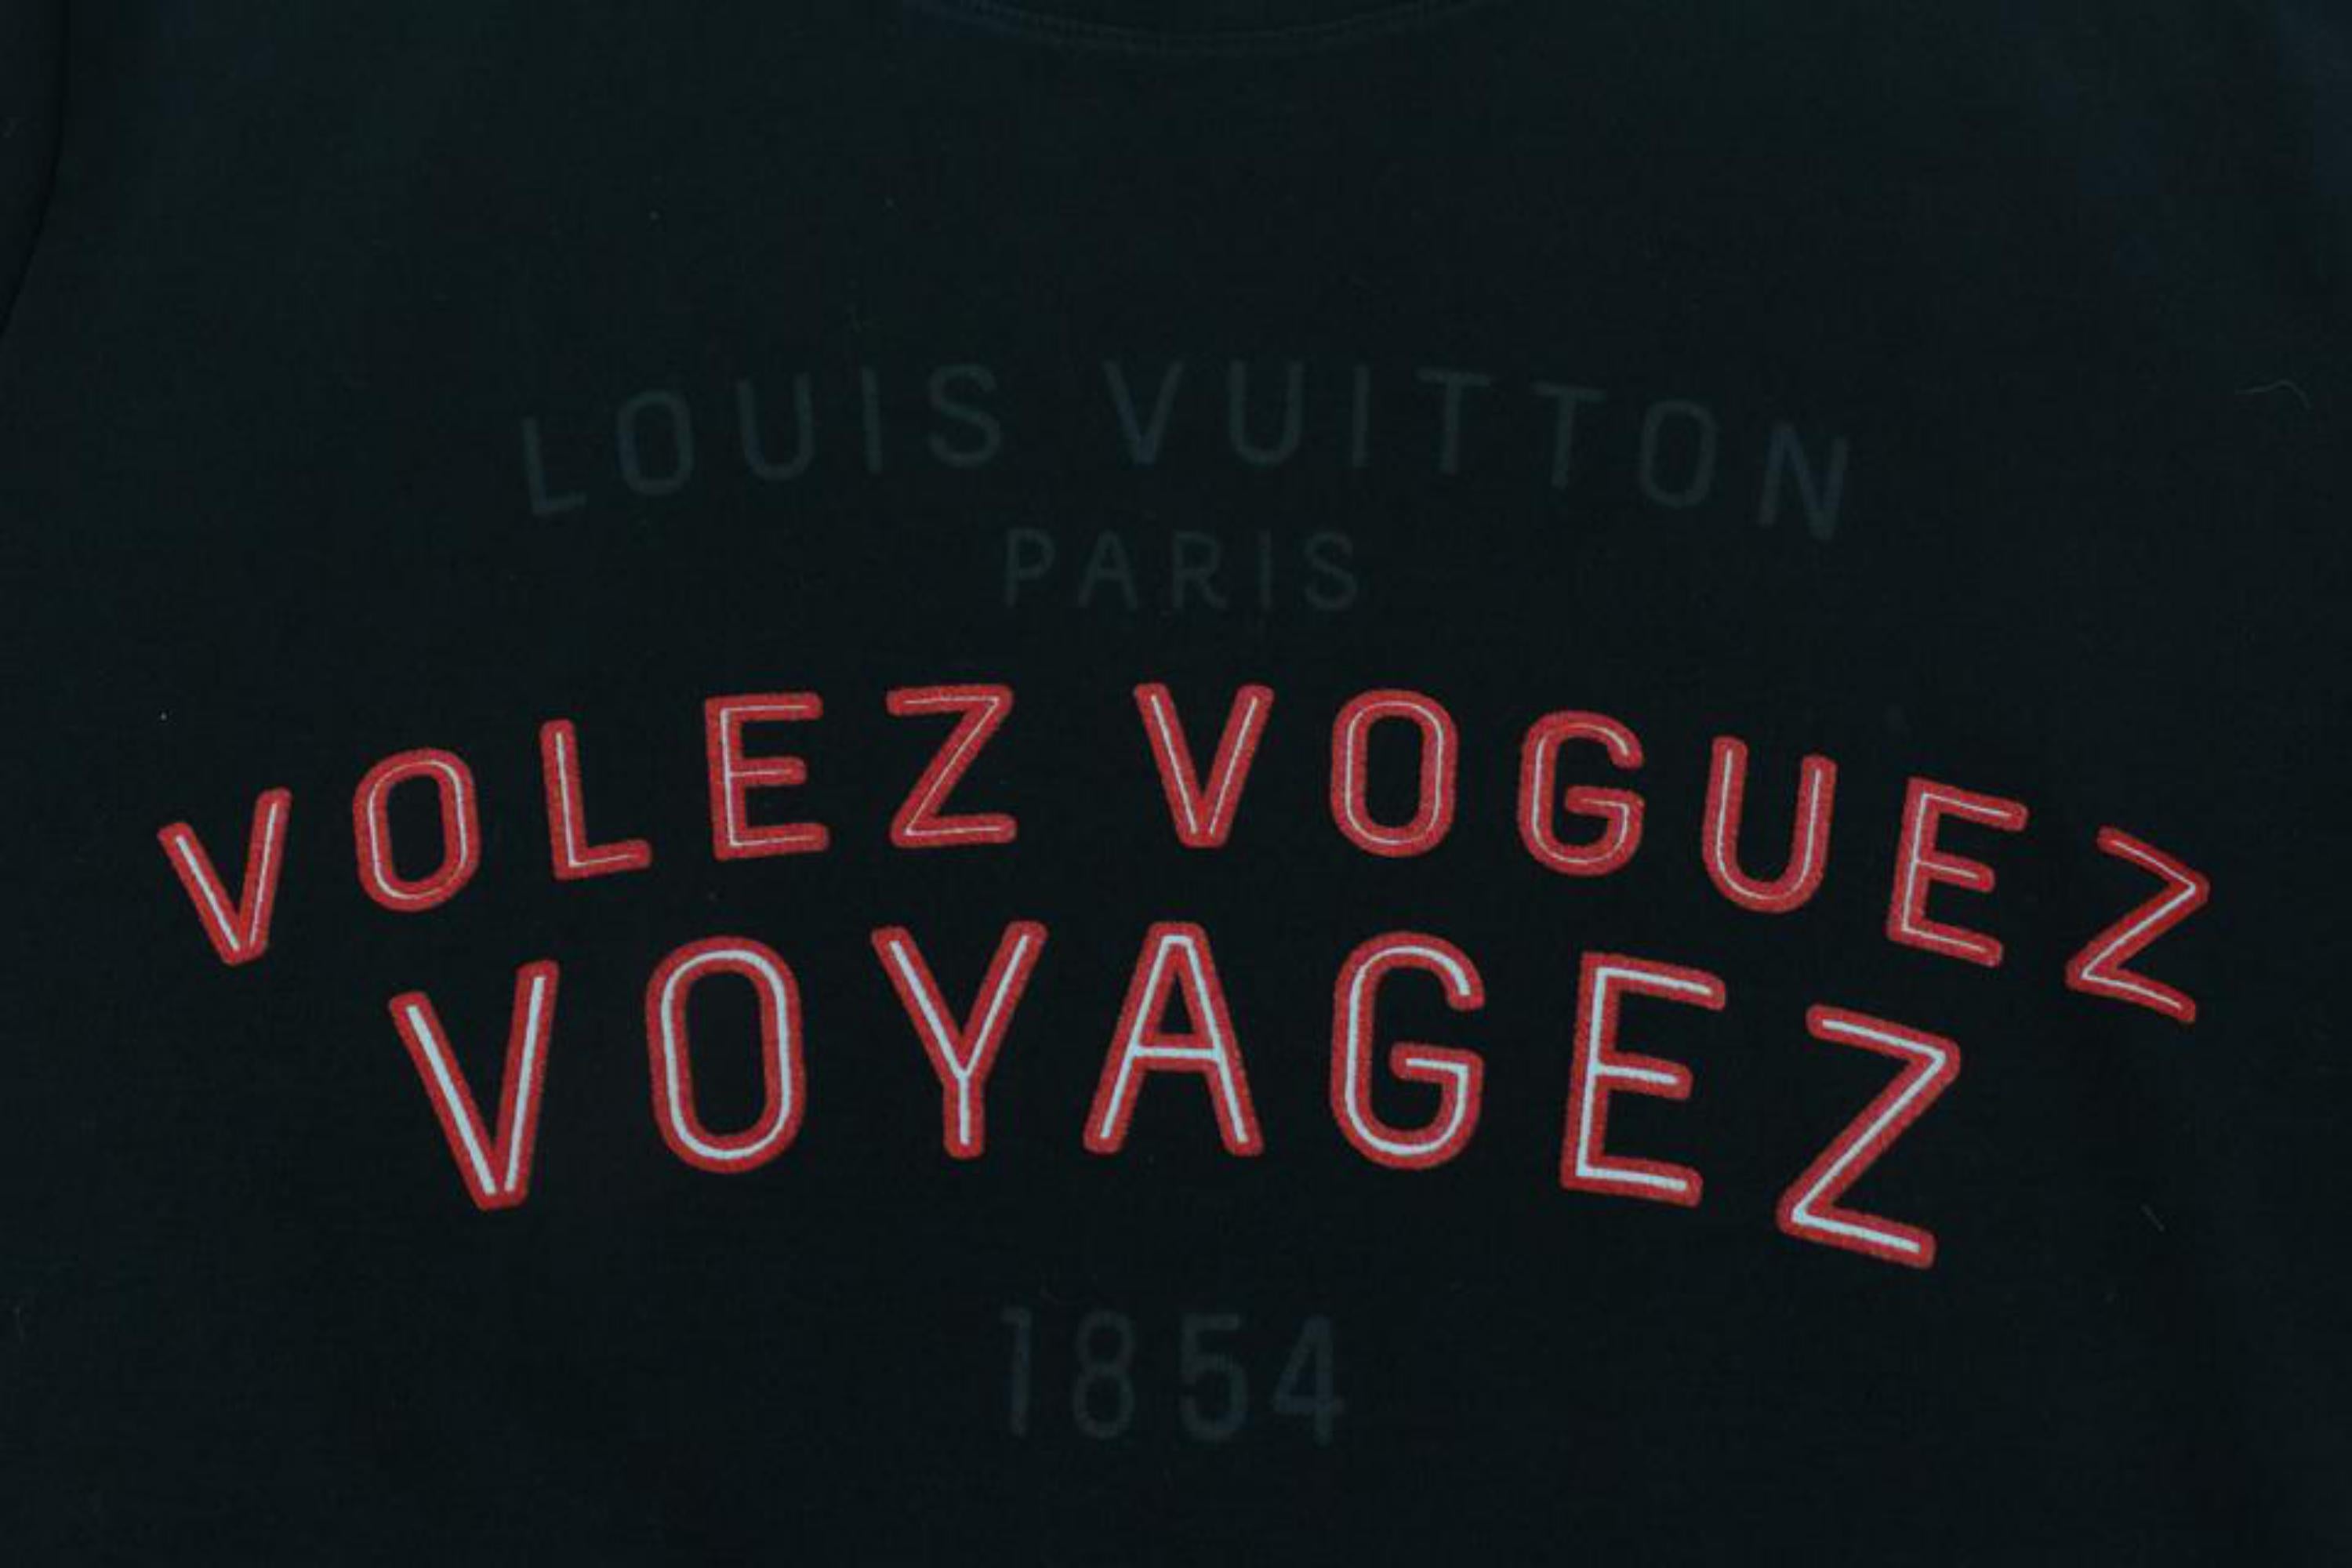 Louis Vuitton Men's Large Black x Red Volez Voguez Voyagez T-Shirt Tee 1116lv35 For Sale 5